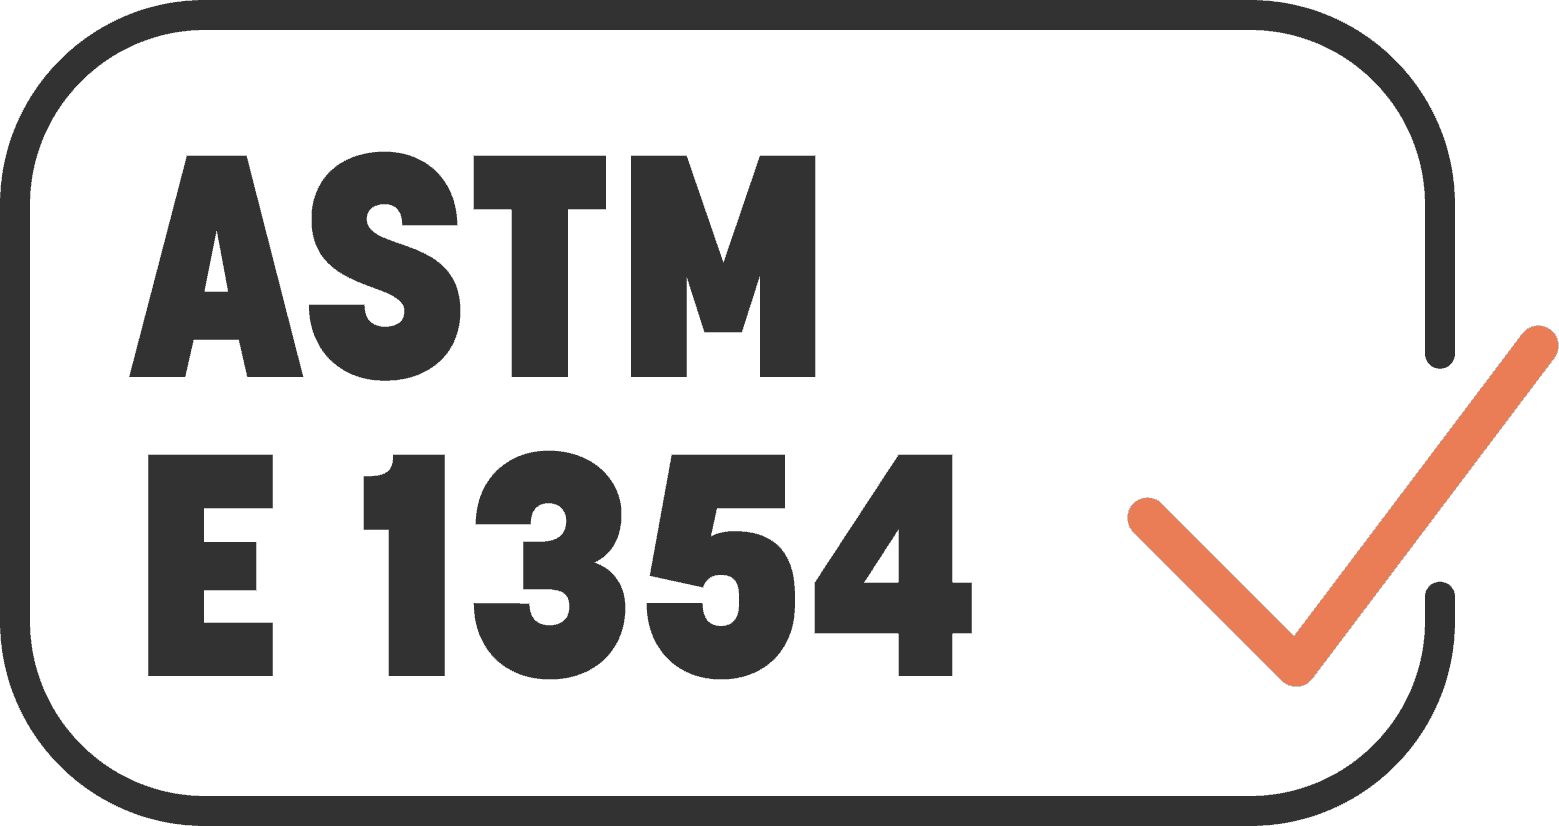 ASTM E 1354